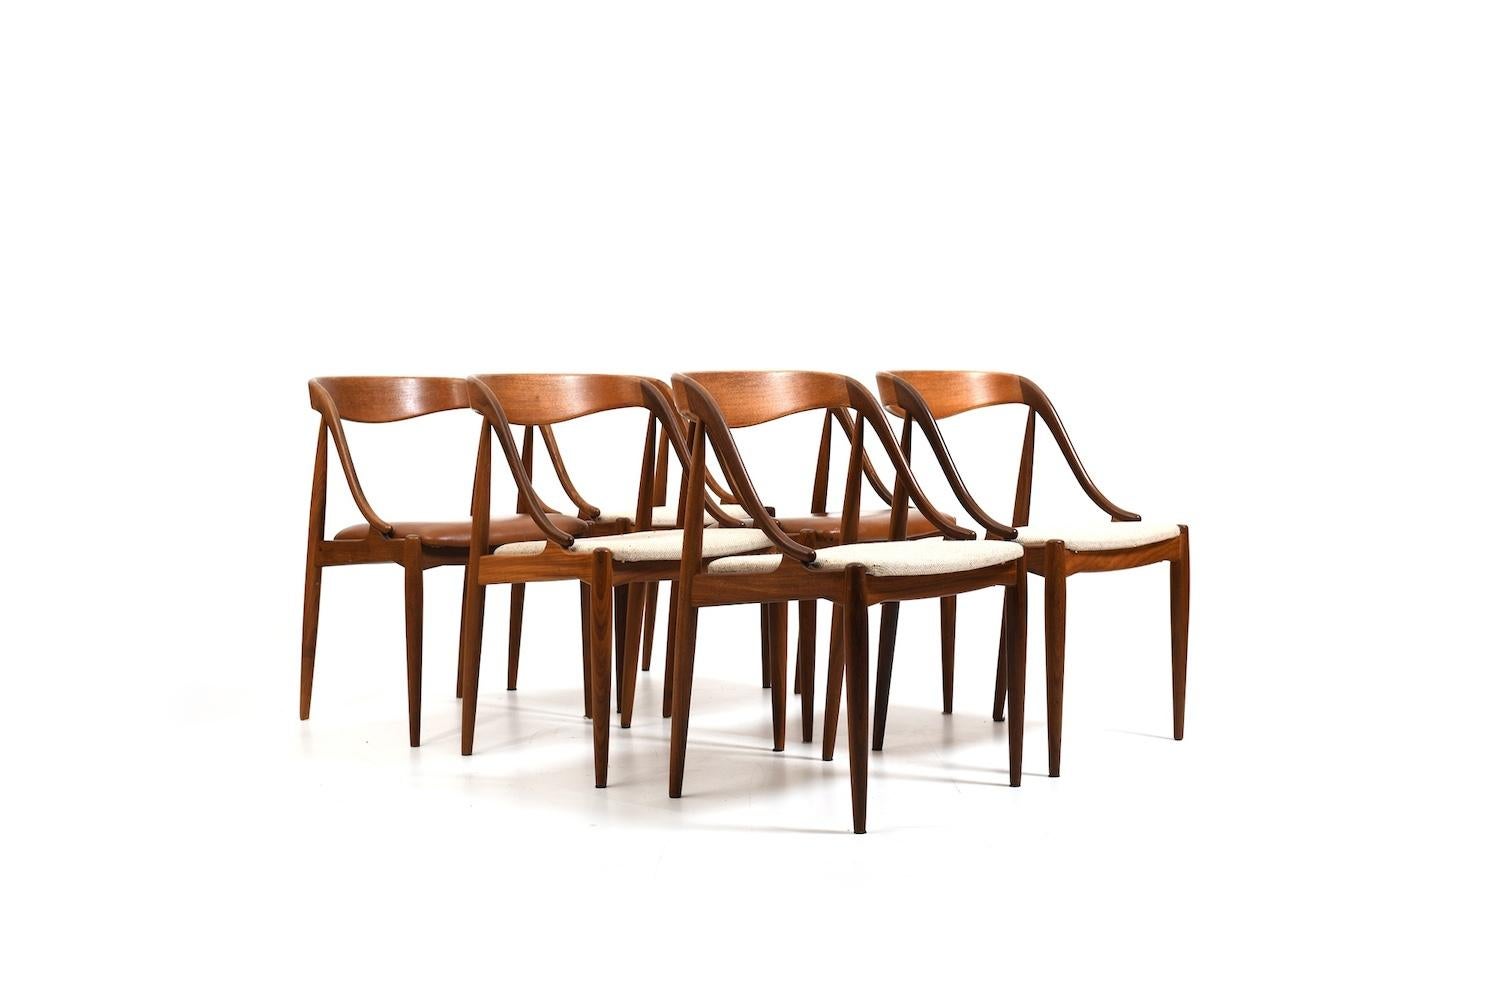 Ensemble de six chaises de salle à manger danoises en teck. Design/One pour Uldum Møbelfabrik 1950s. Numéro de modèle 16. Tapissé de tissu crème. 2 chaises plus tard en simili cuir marron. Nous pouvons créer un nouveau tissu pour vous, veuillez